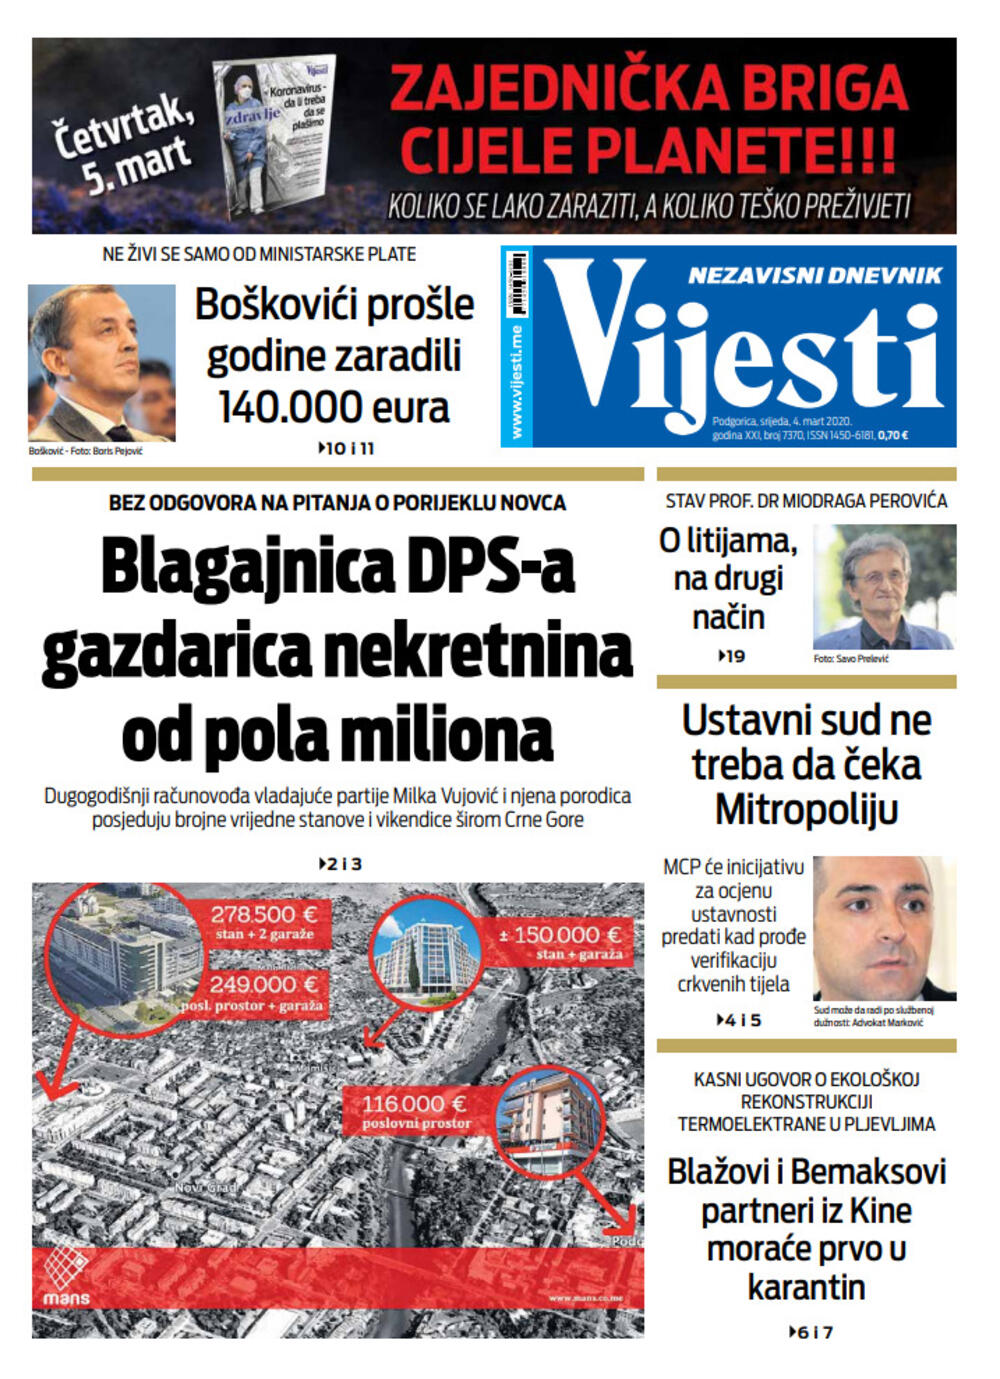 Naslovna strana "Vijesti" za 4. mart 2020., Foto: Vijesti